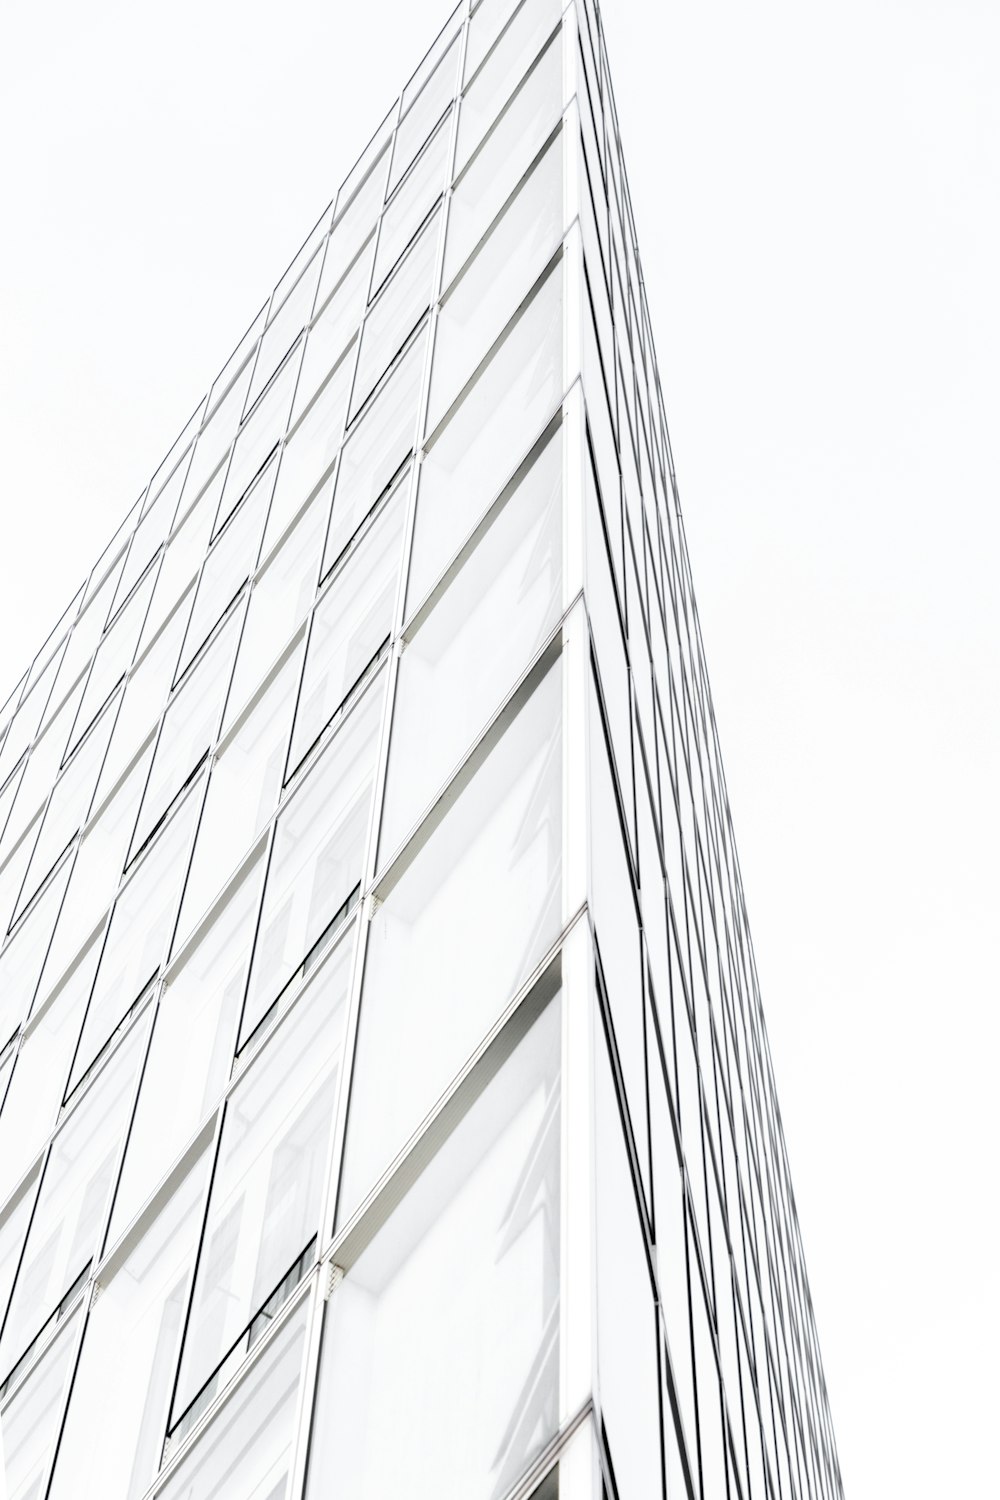 Edificio de gran altura con paredes de vidrio blanco y negro